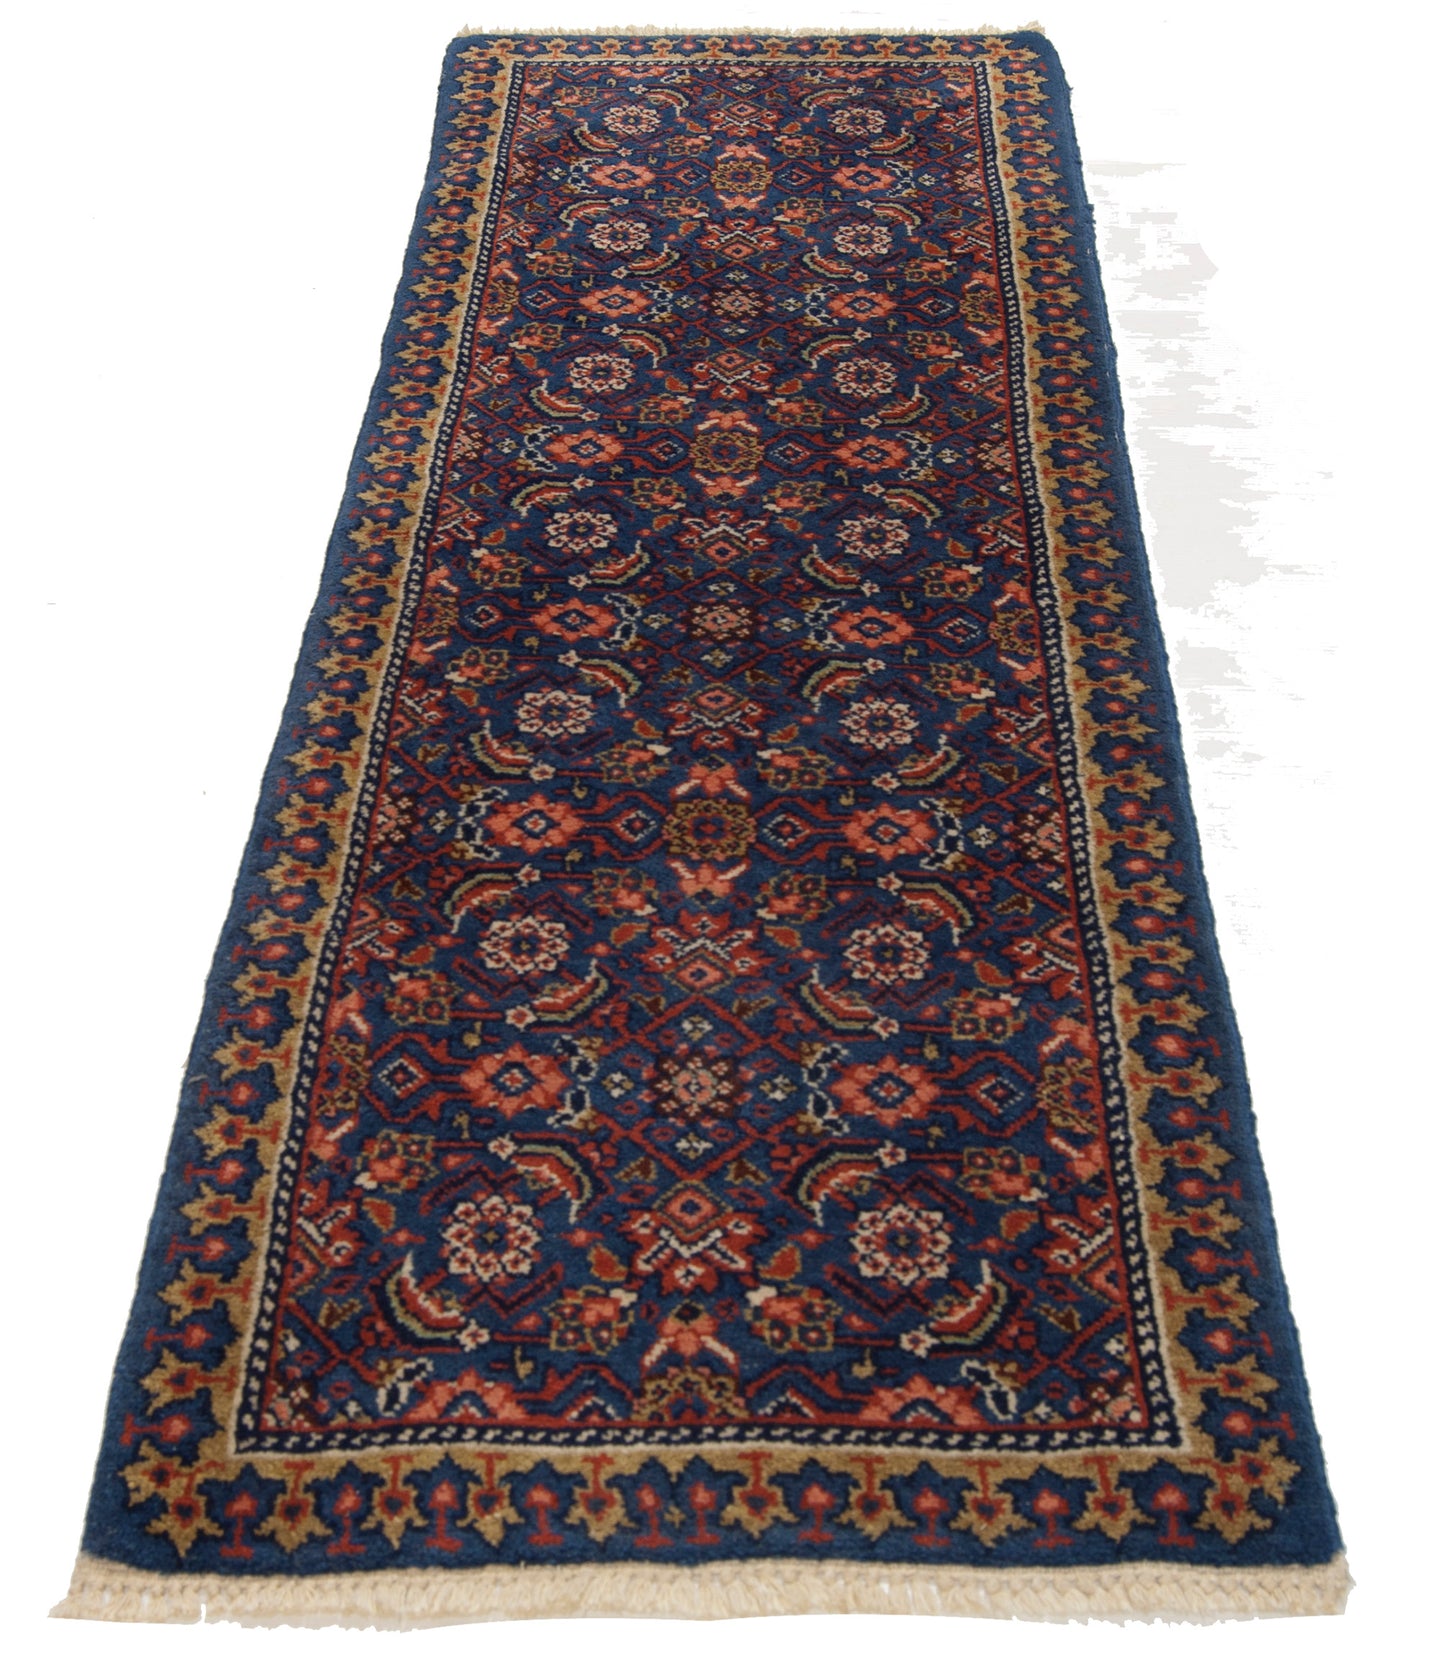 150x50 Tappeto Carpet Sarok / Sarokh / Saruk / Sarookh 